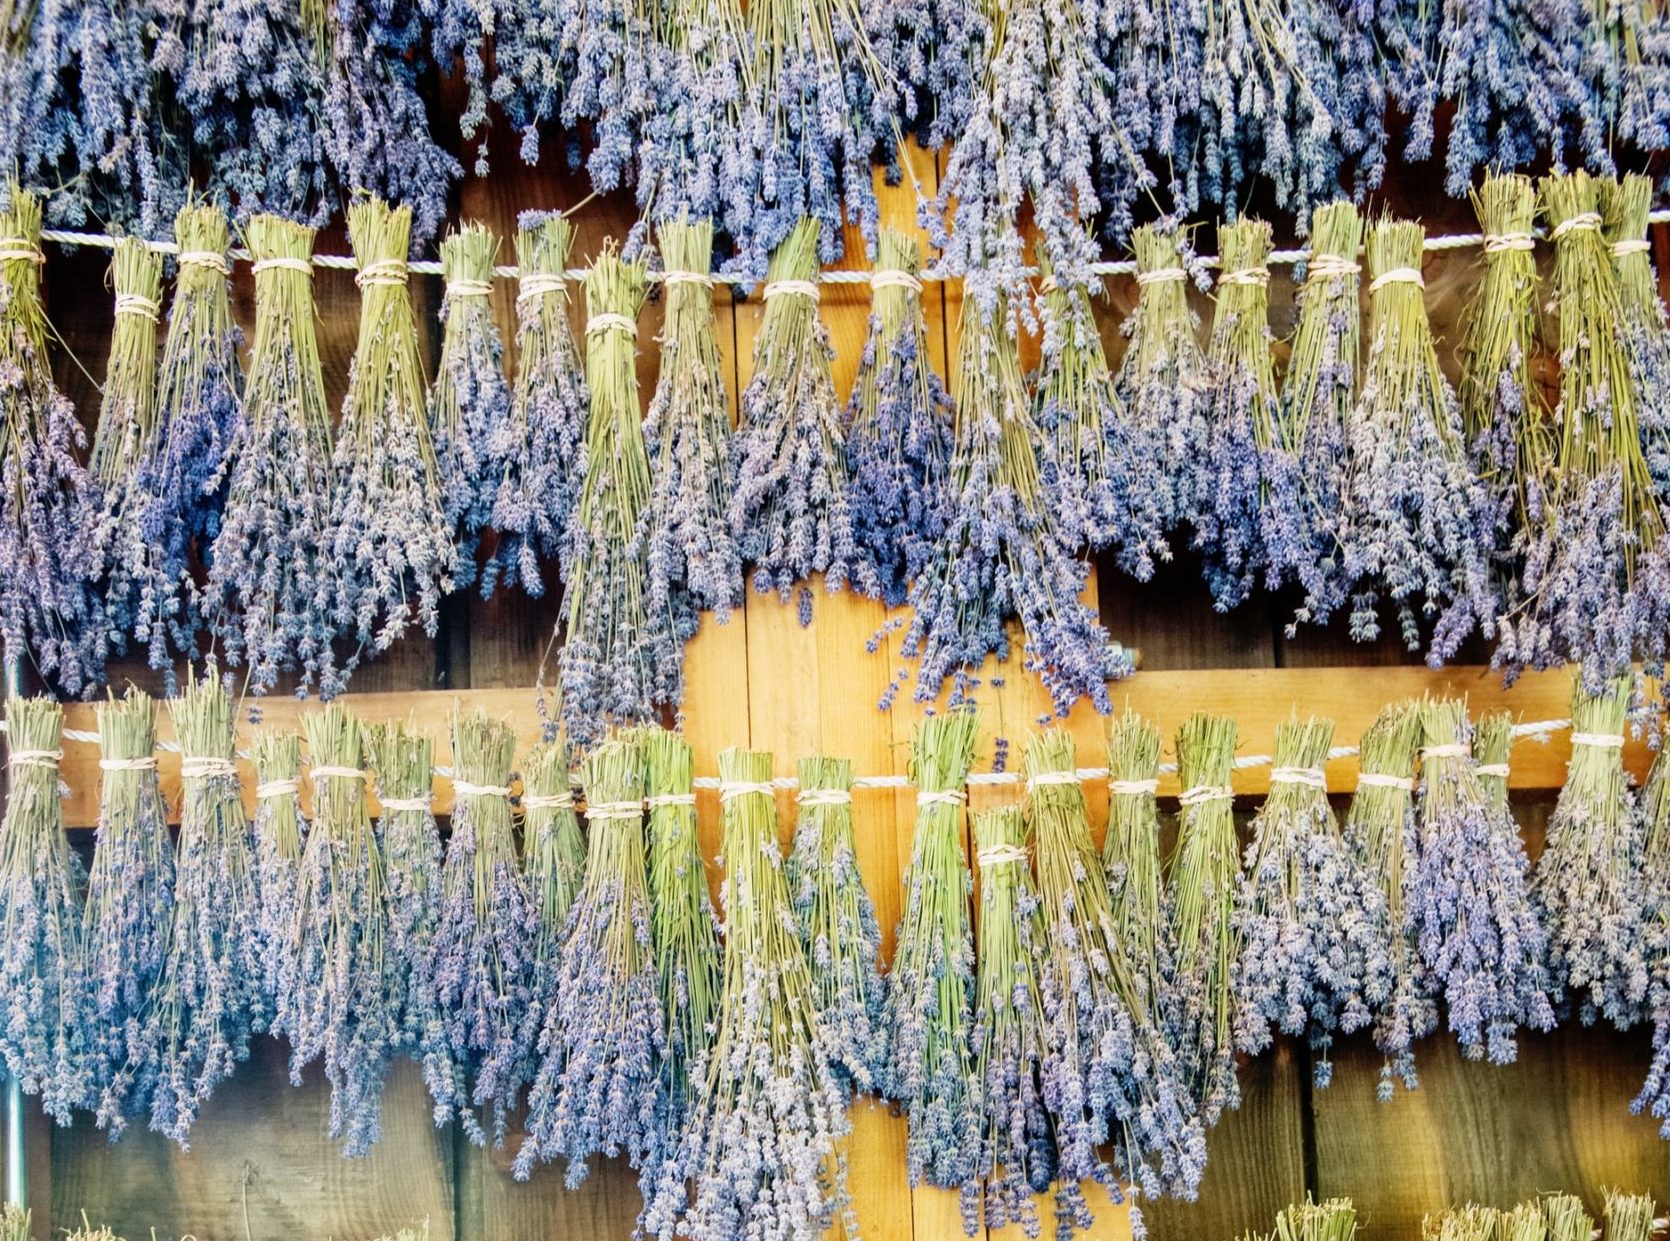 De zomerse geur van drogende bosjes lavendel